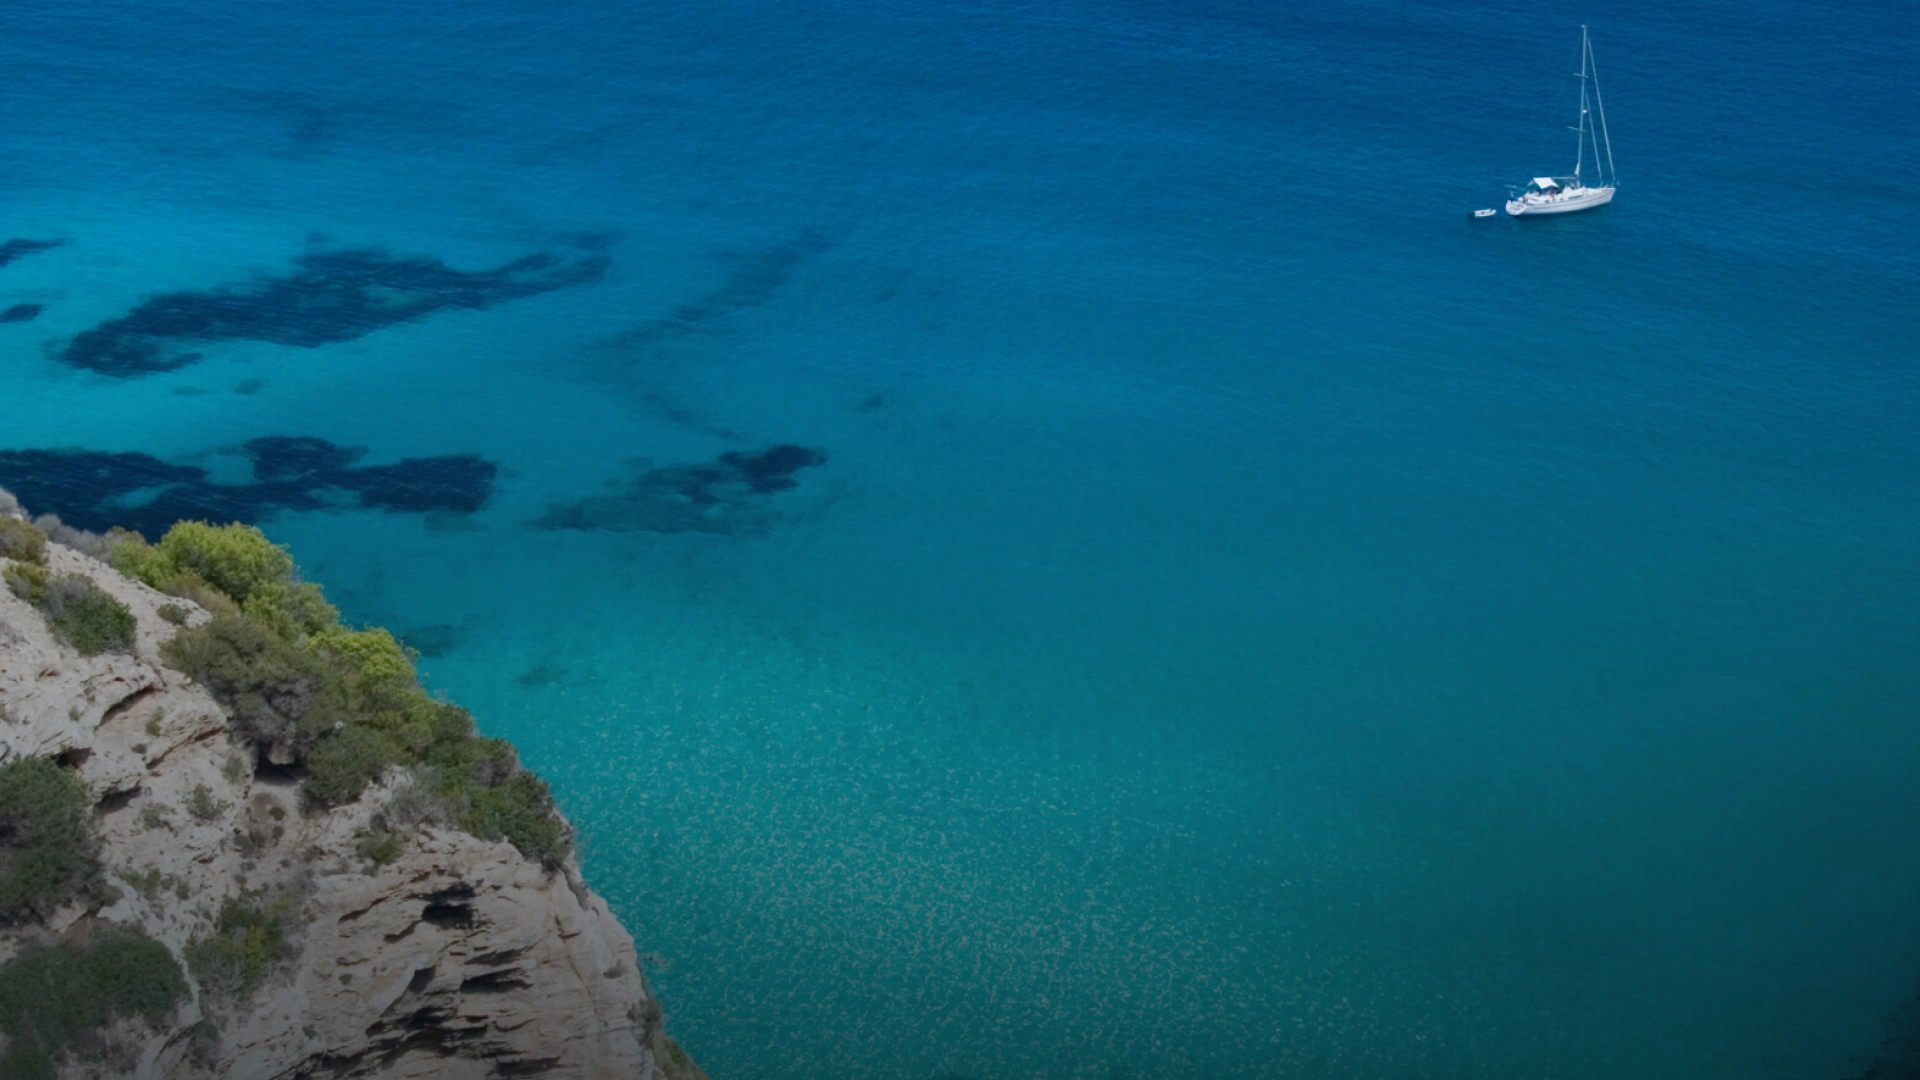 Proyecto de turismo eco sostenible en Formentera desarrollado y ejecutado por Refineria